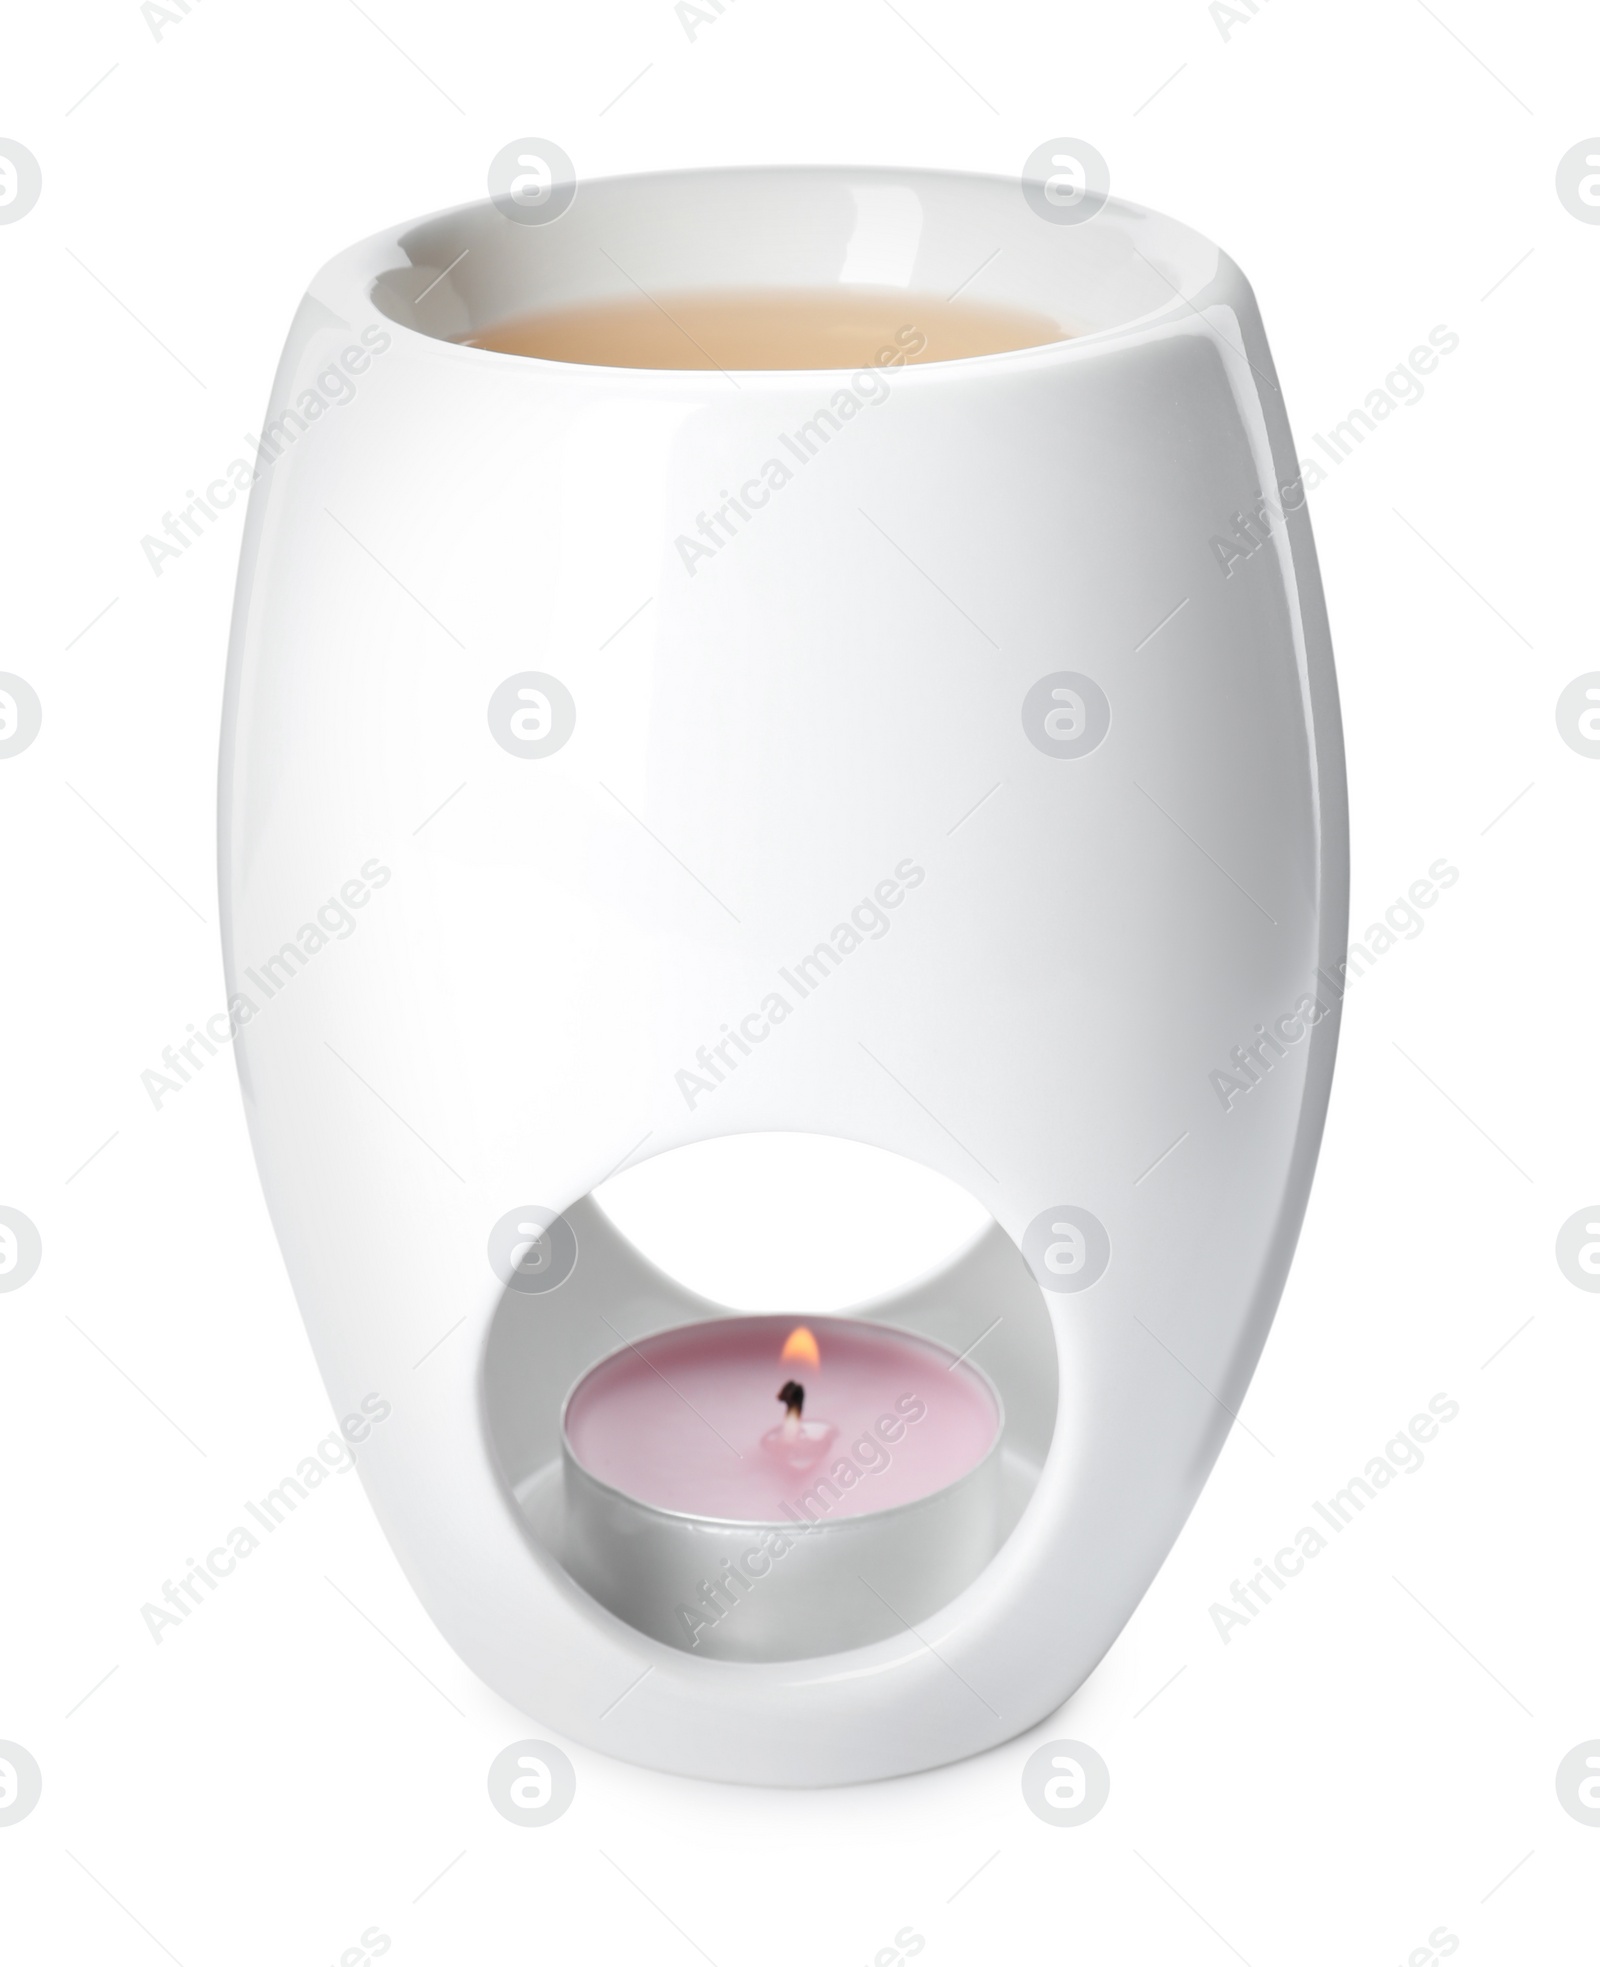 Photo of New stylish aromatherapy lamp isolated on white